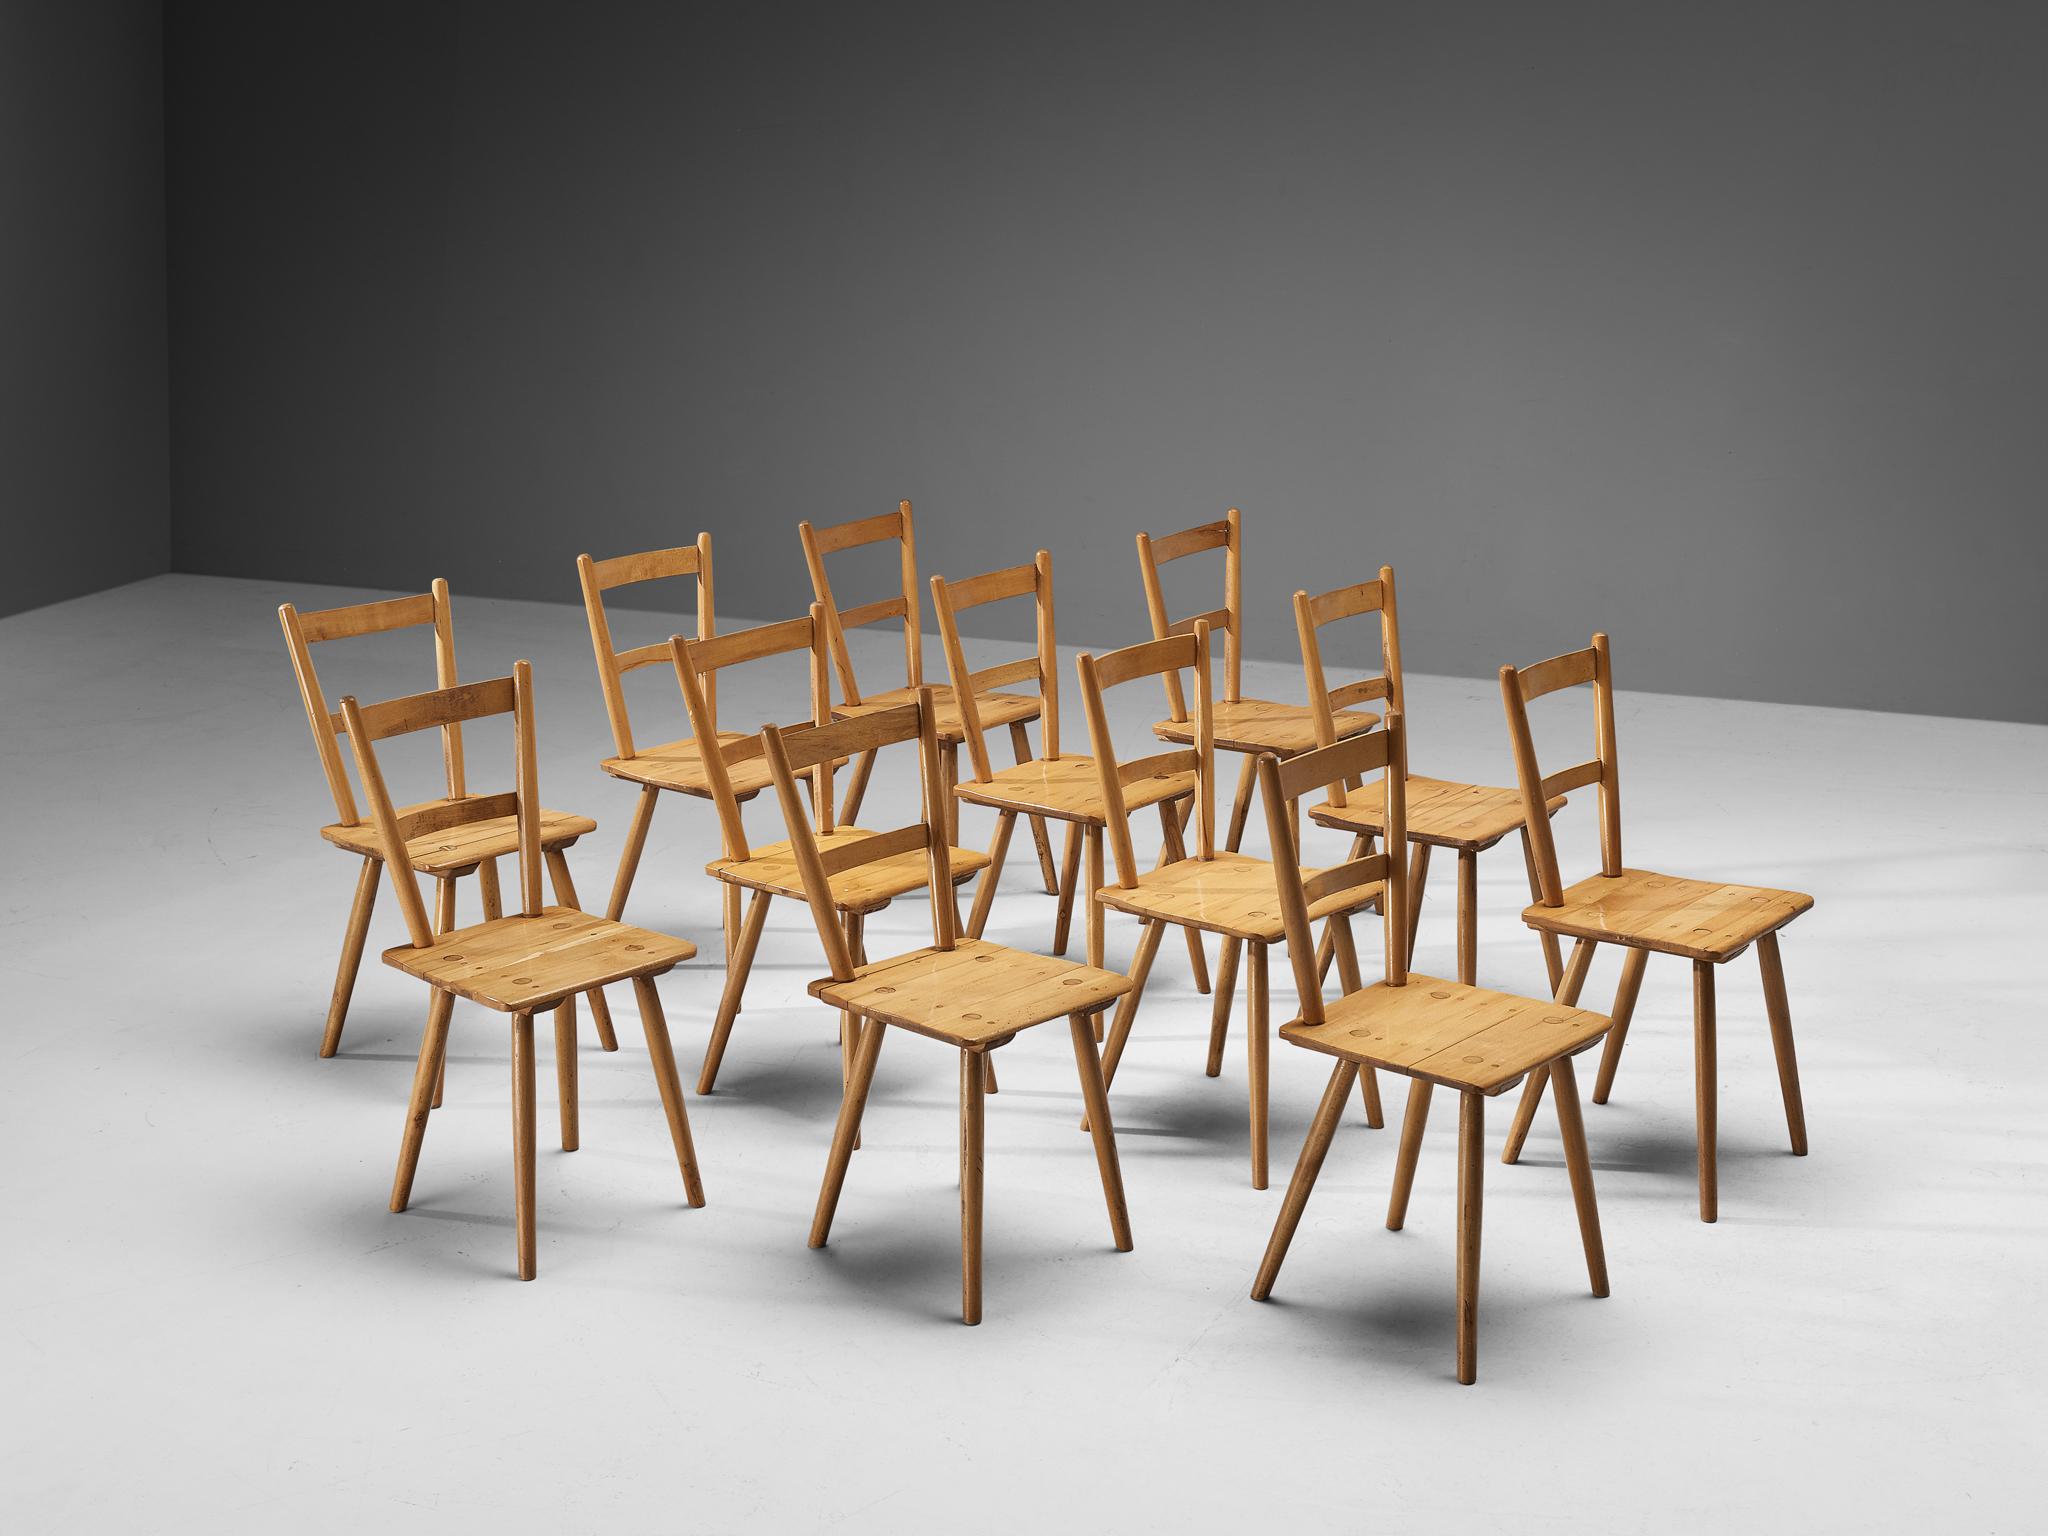 Esszimmerstühle, Buche, Niederlande, 1960er Jahre. 

Großer Satz von zwölf bescheidenen niederländischen Esszimmerstühlen. Diese modernen Stühle ähneln dem Stil der Entwürfe des britischen Möbelherstellers Ercol. Diese puritanischen, schlichten